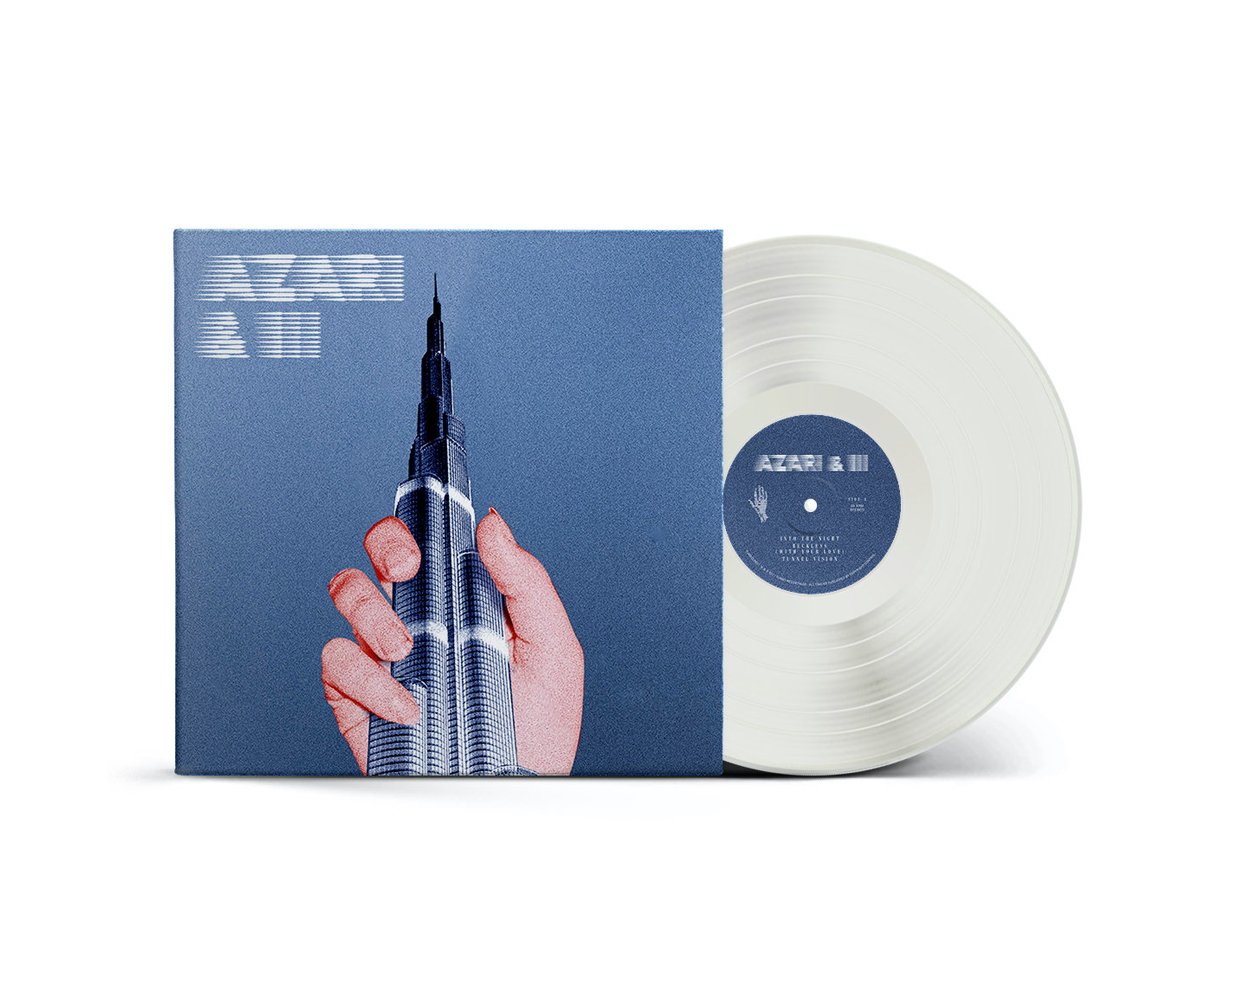 Azari & III - Azari & III (Transparent Vinyl)